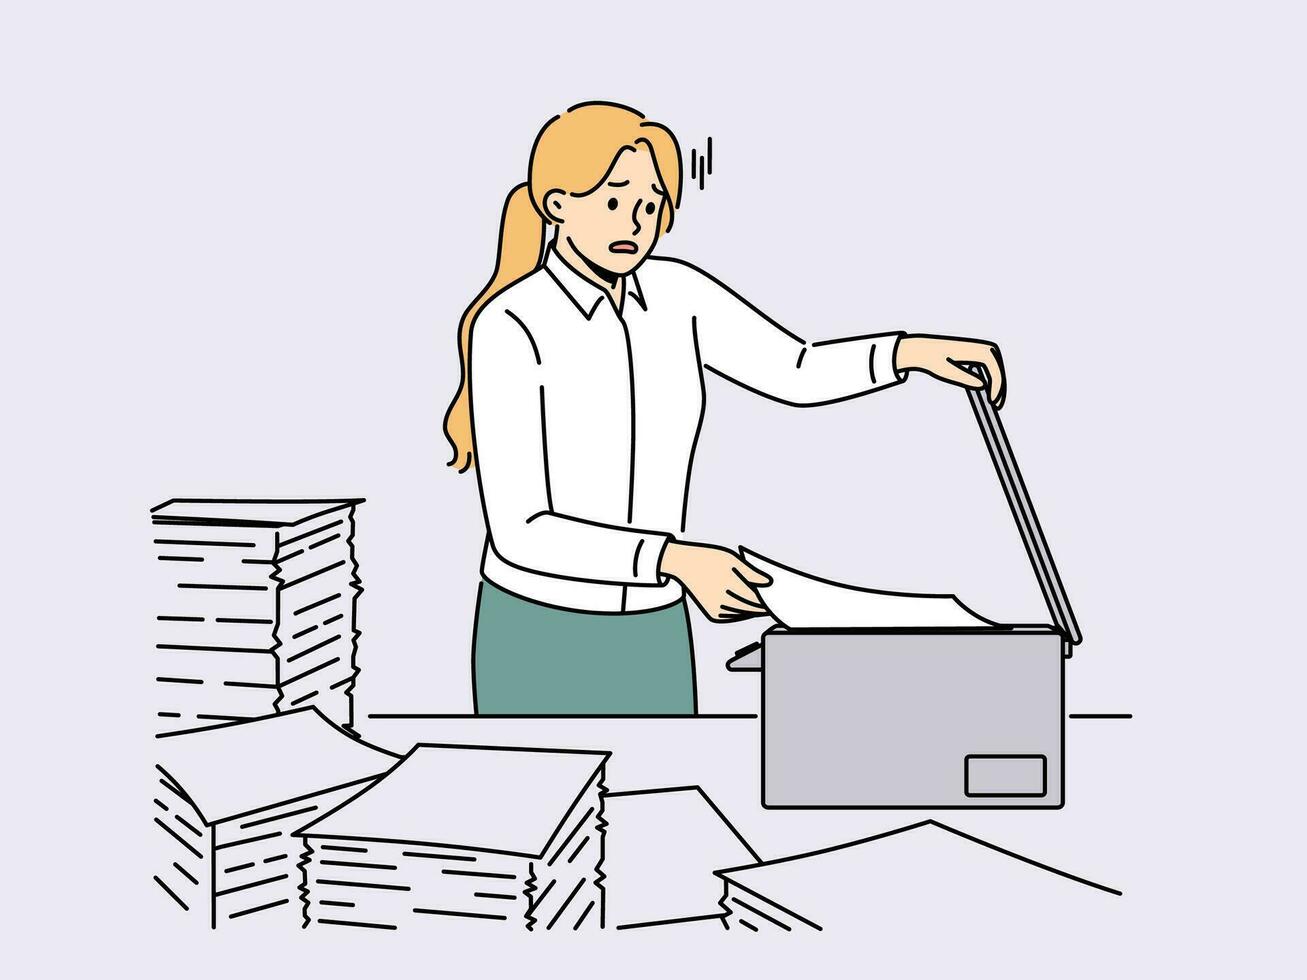 überwältigt weiblich Mitarbeiter haben Probleme Herstellung Kopien beim Kopierer im Büro. betont Frau Arbeiter Duplikat Papierkram im Kopieren Maschine. Vektor Illustration.